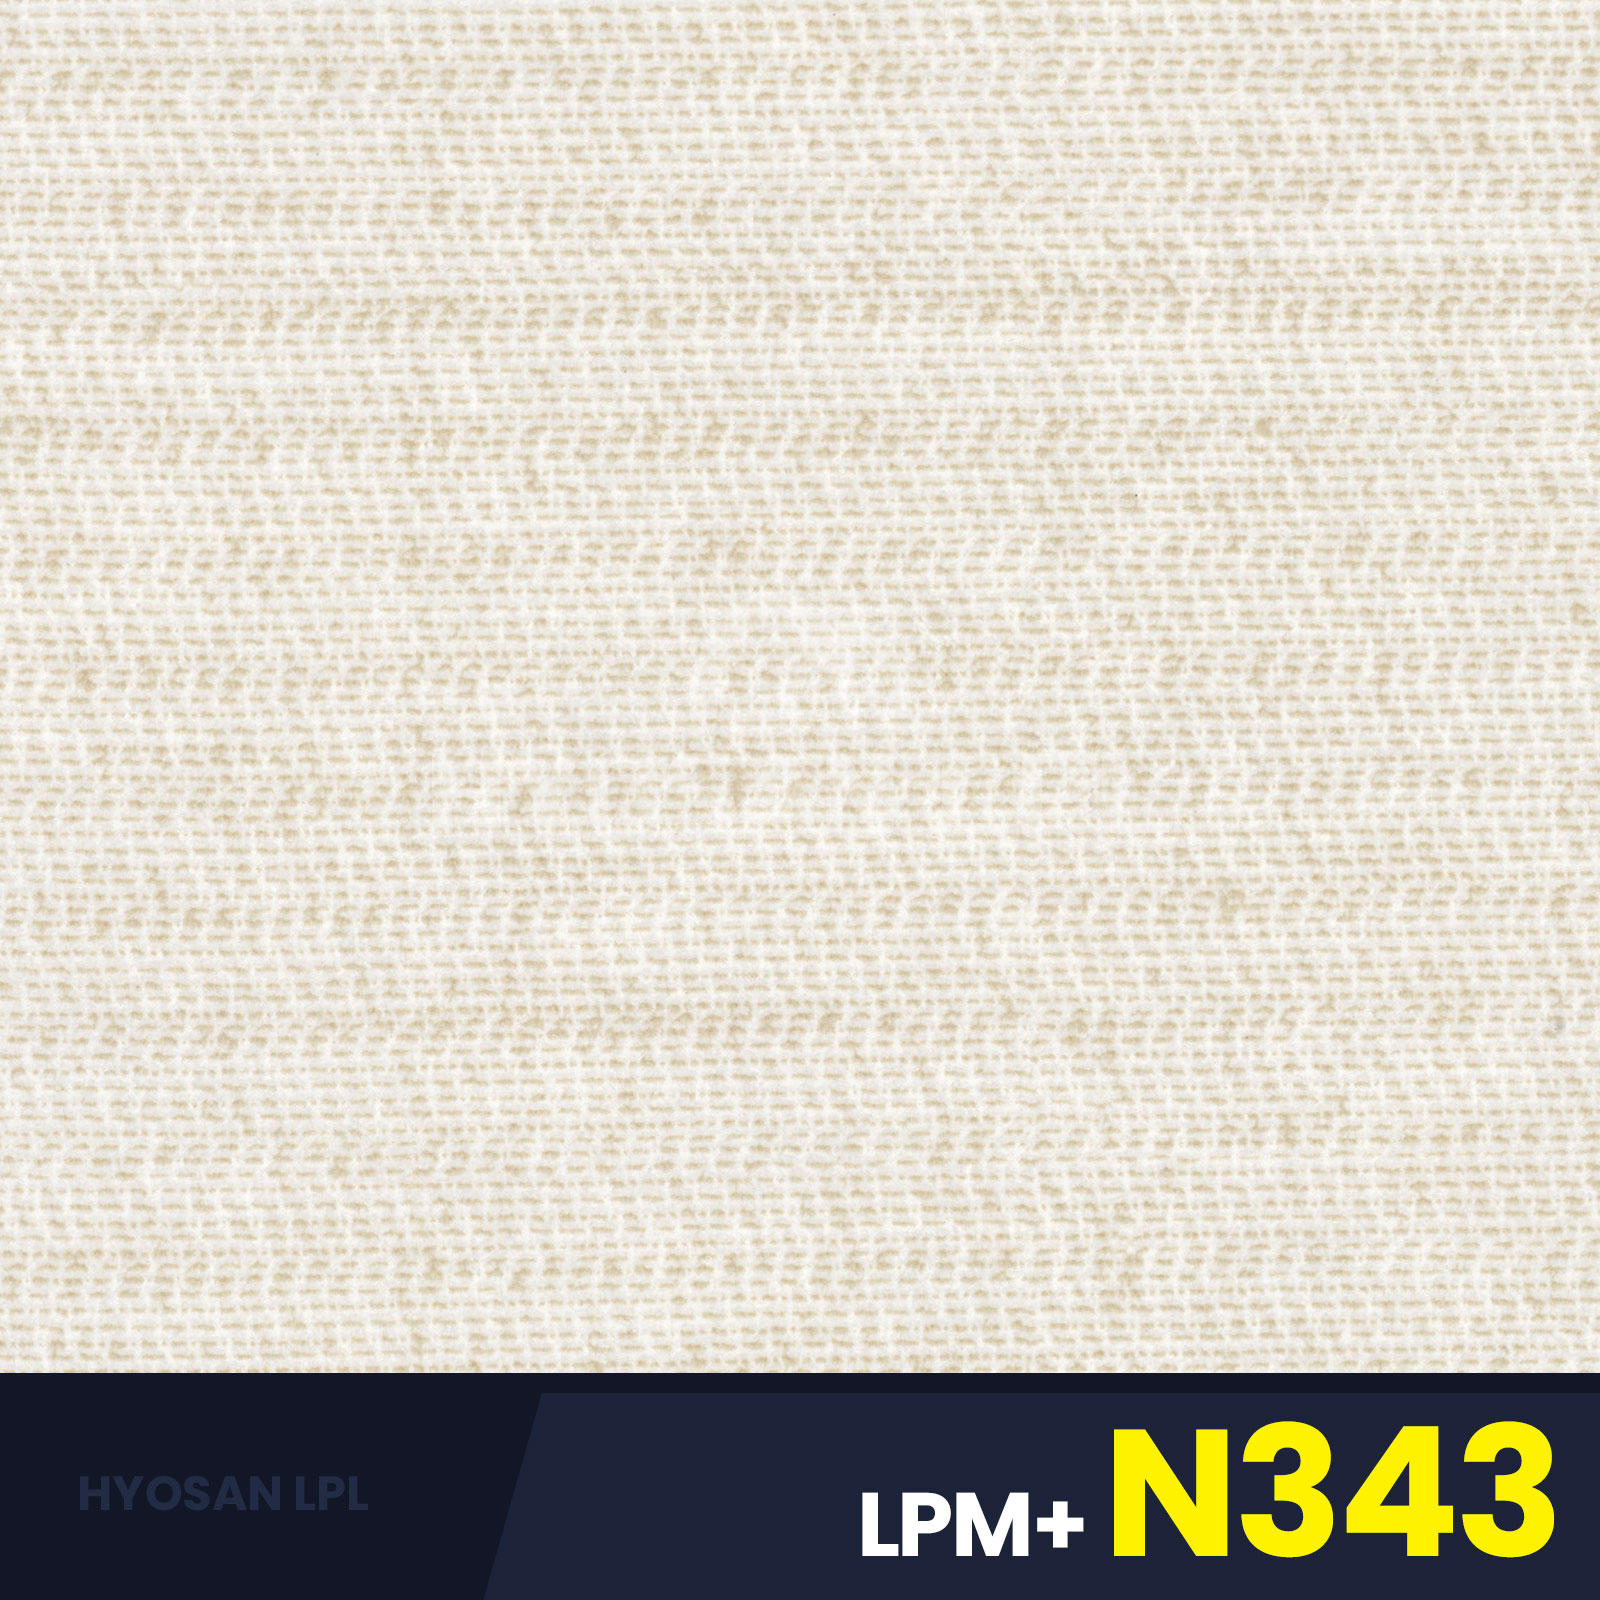 LPM+N343